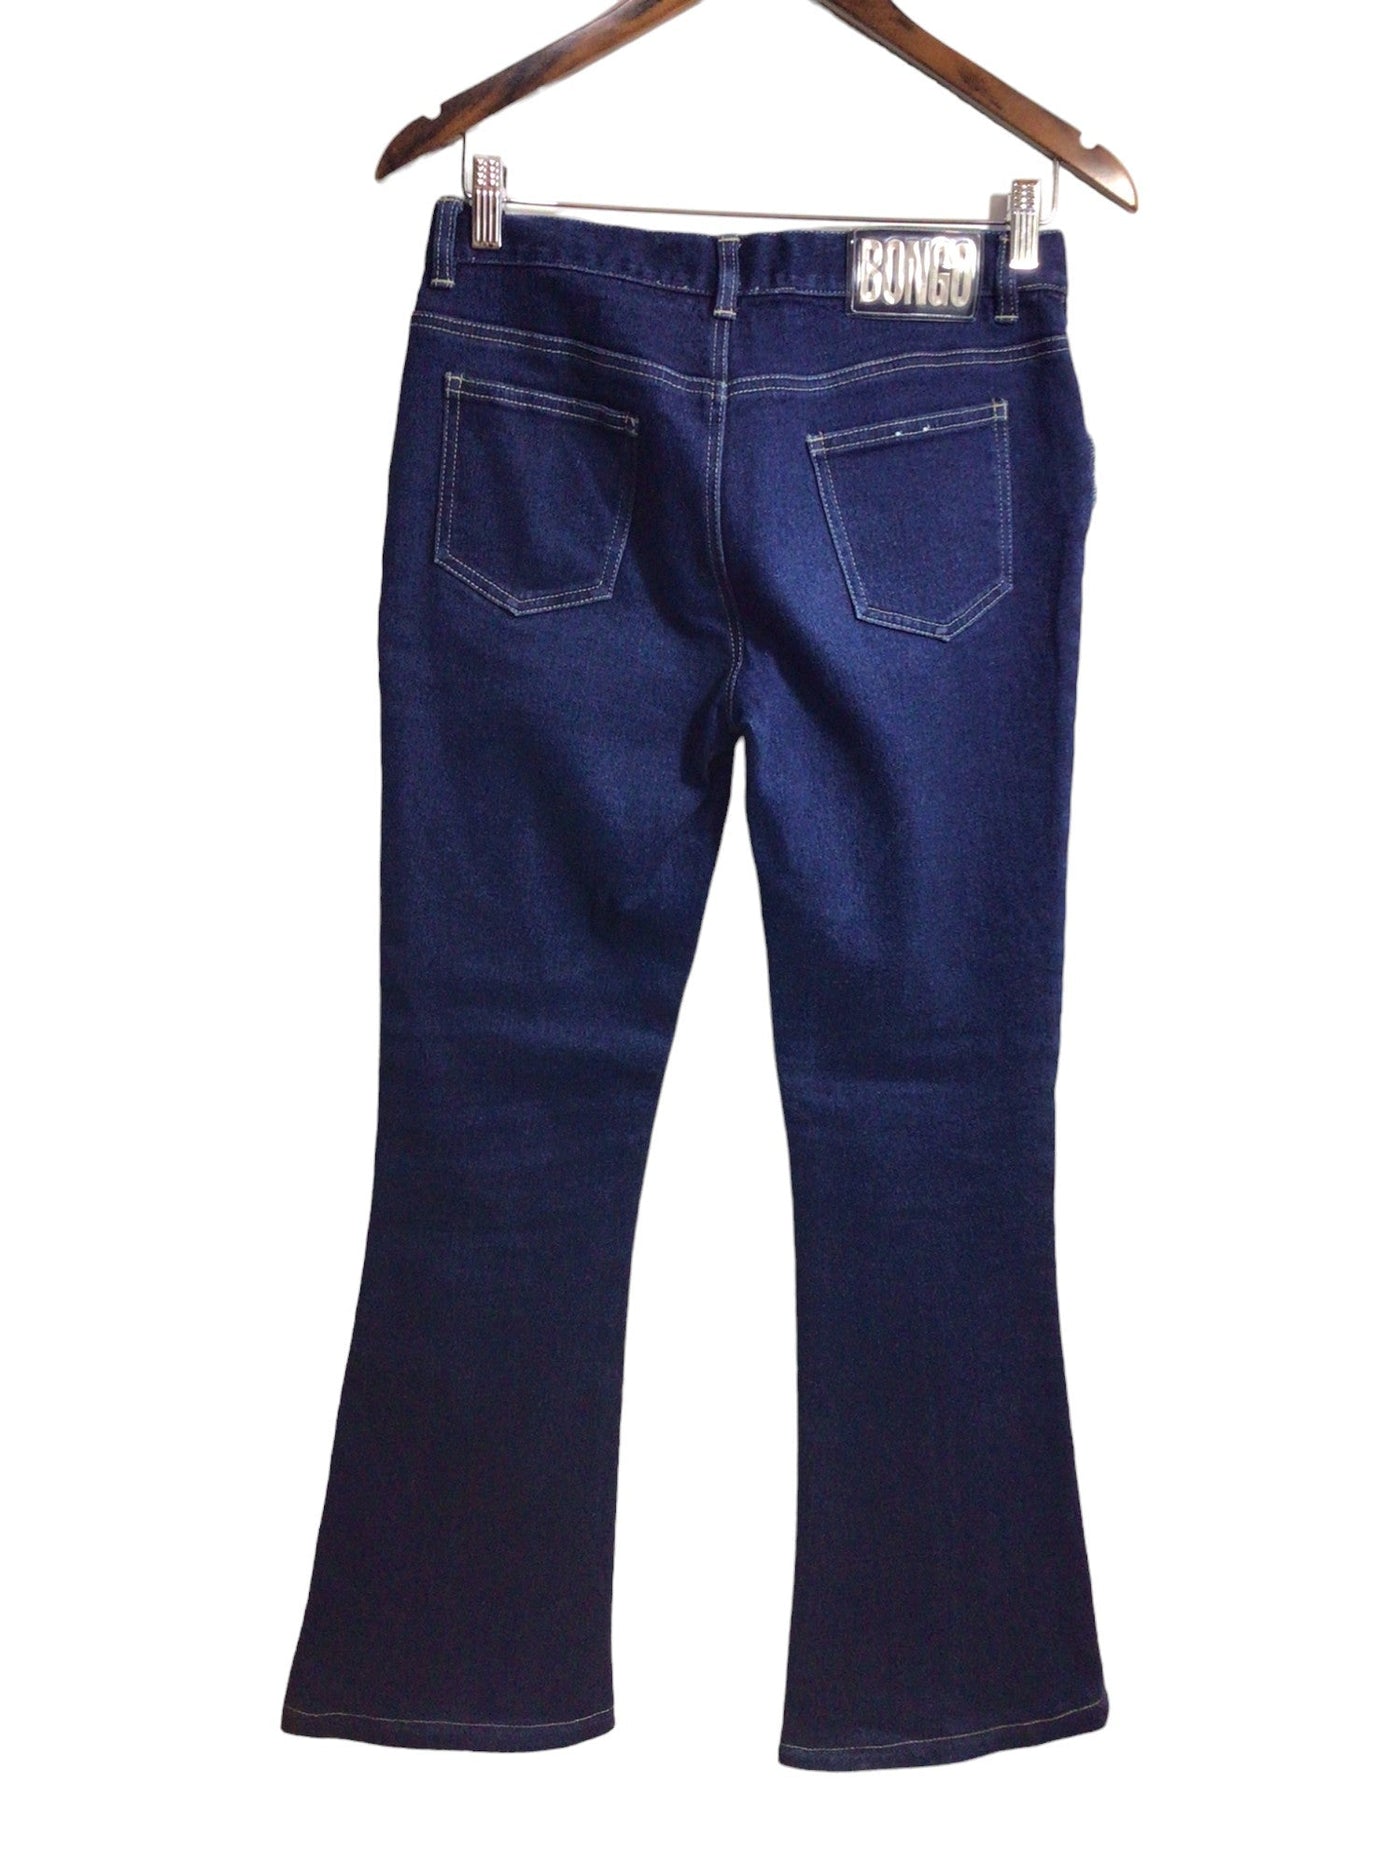 BONGO JEANS Women Straight-Legged Jeans Regular fit in Blue - Size 7 | 22.99 $ KOOP